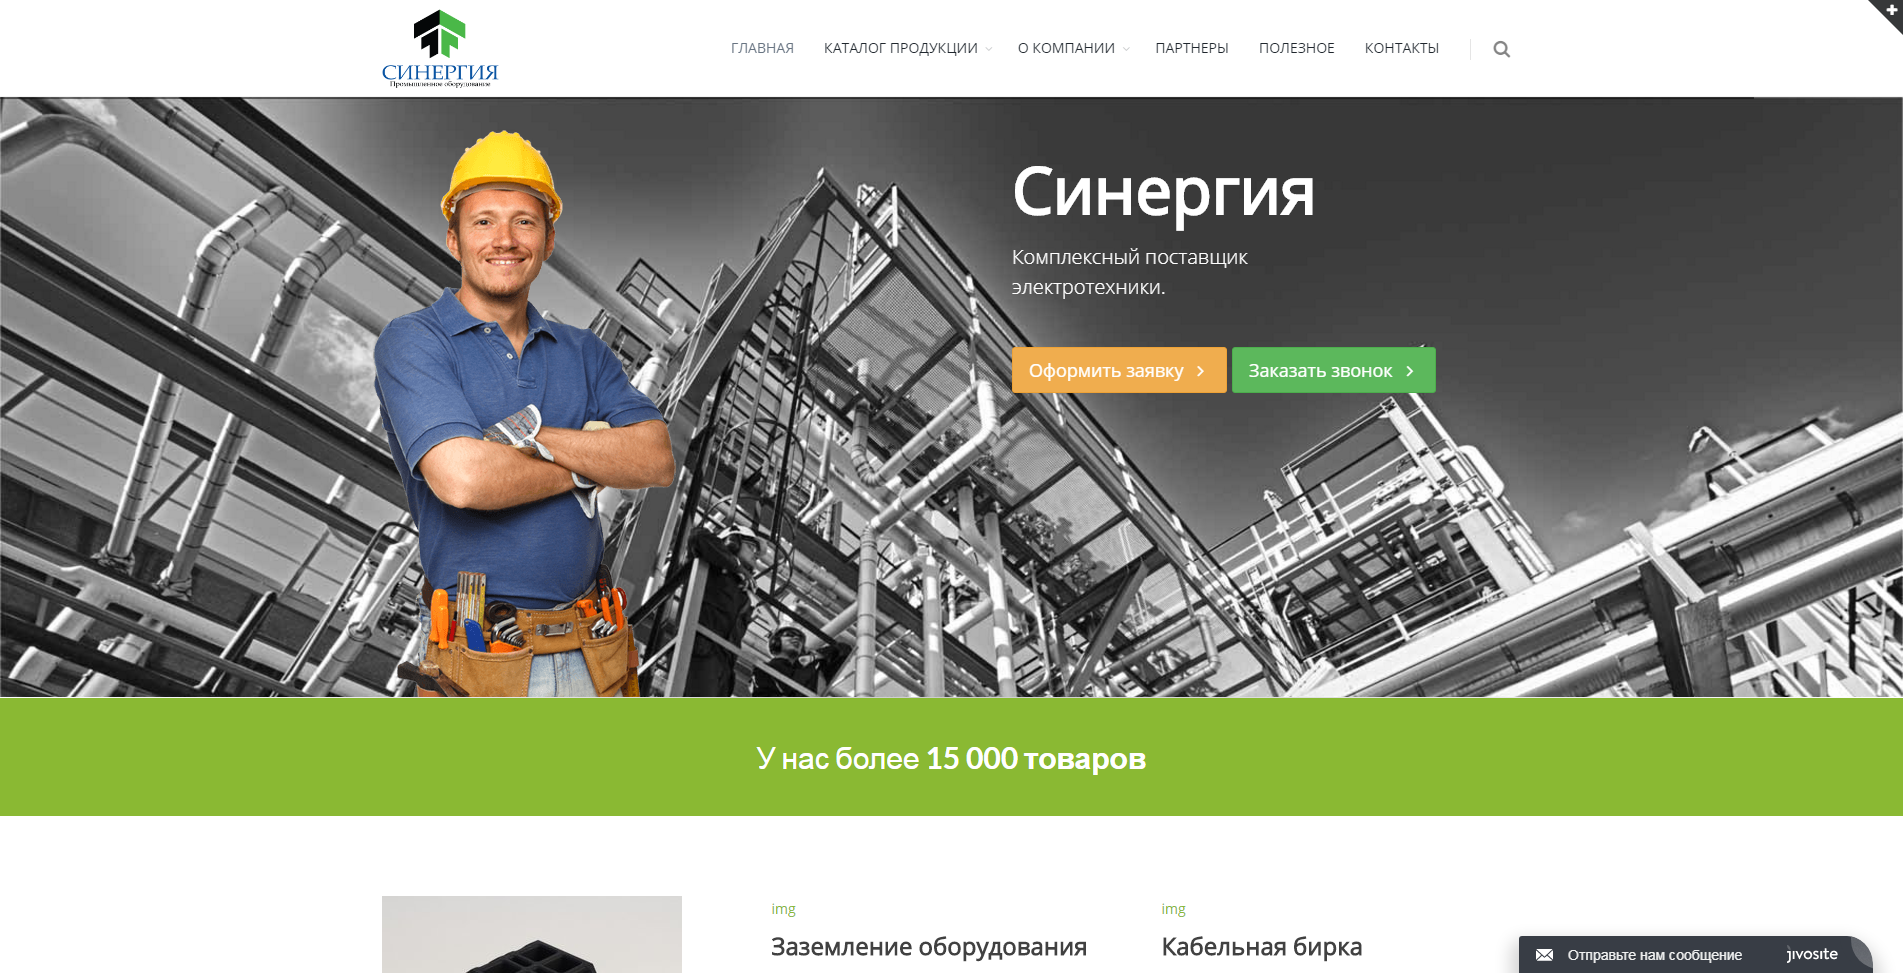 Разработка интернет-магазина для дистрибьютора продукции Российских заводов